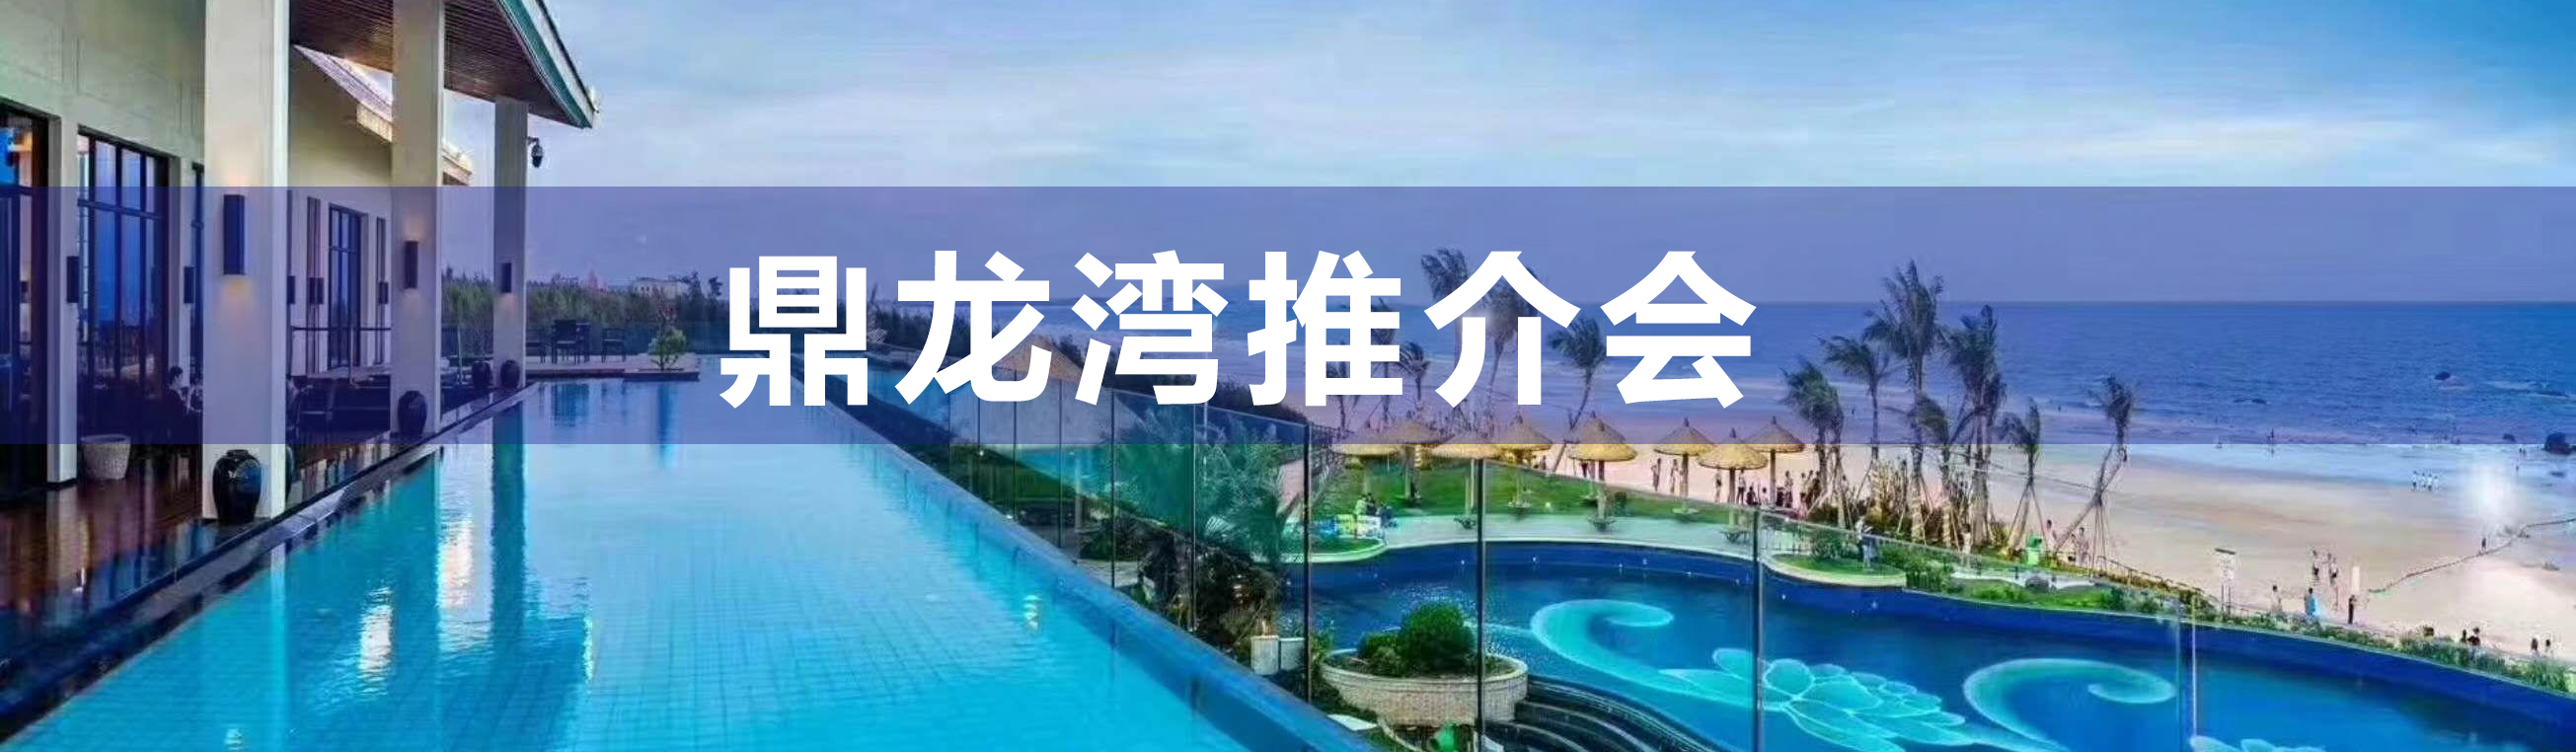  鼎龙湾国际海洋度假区——推介会圆满举行！！